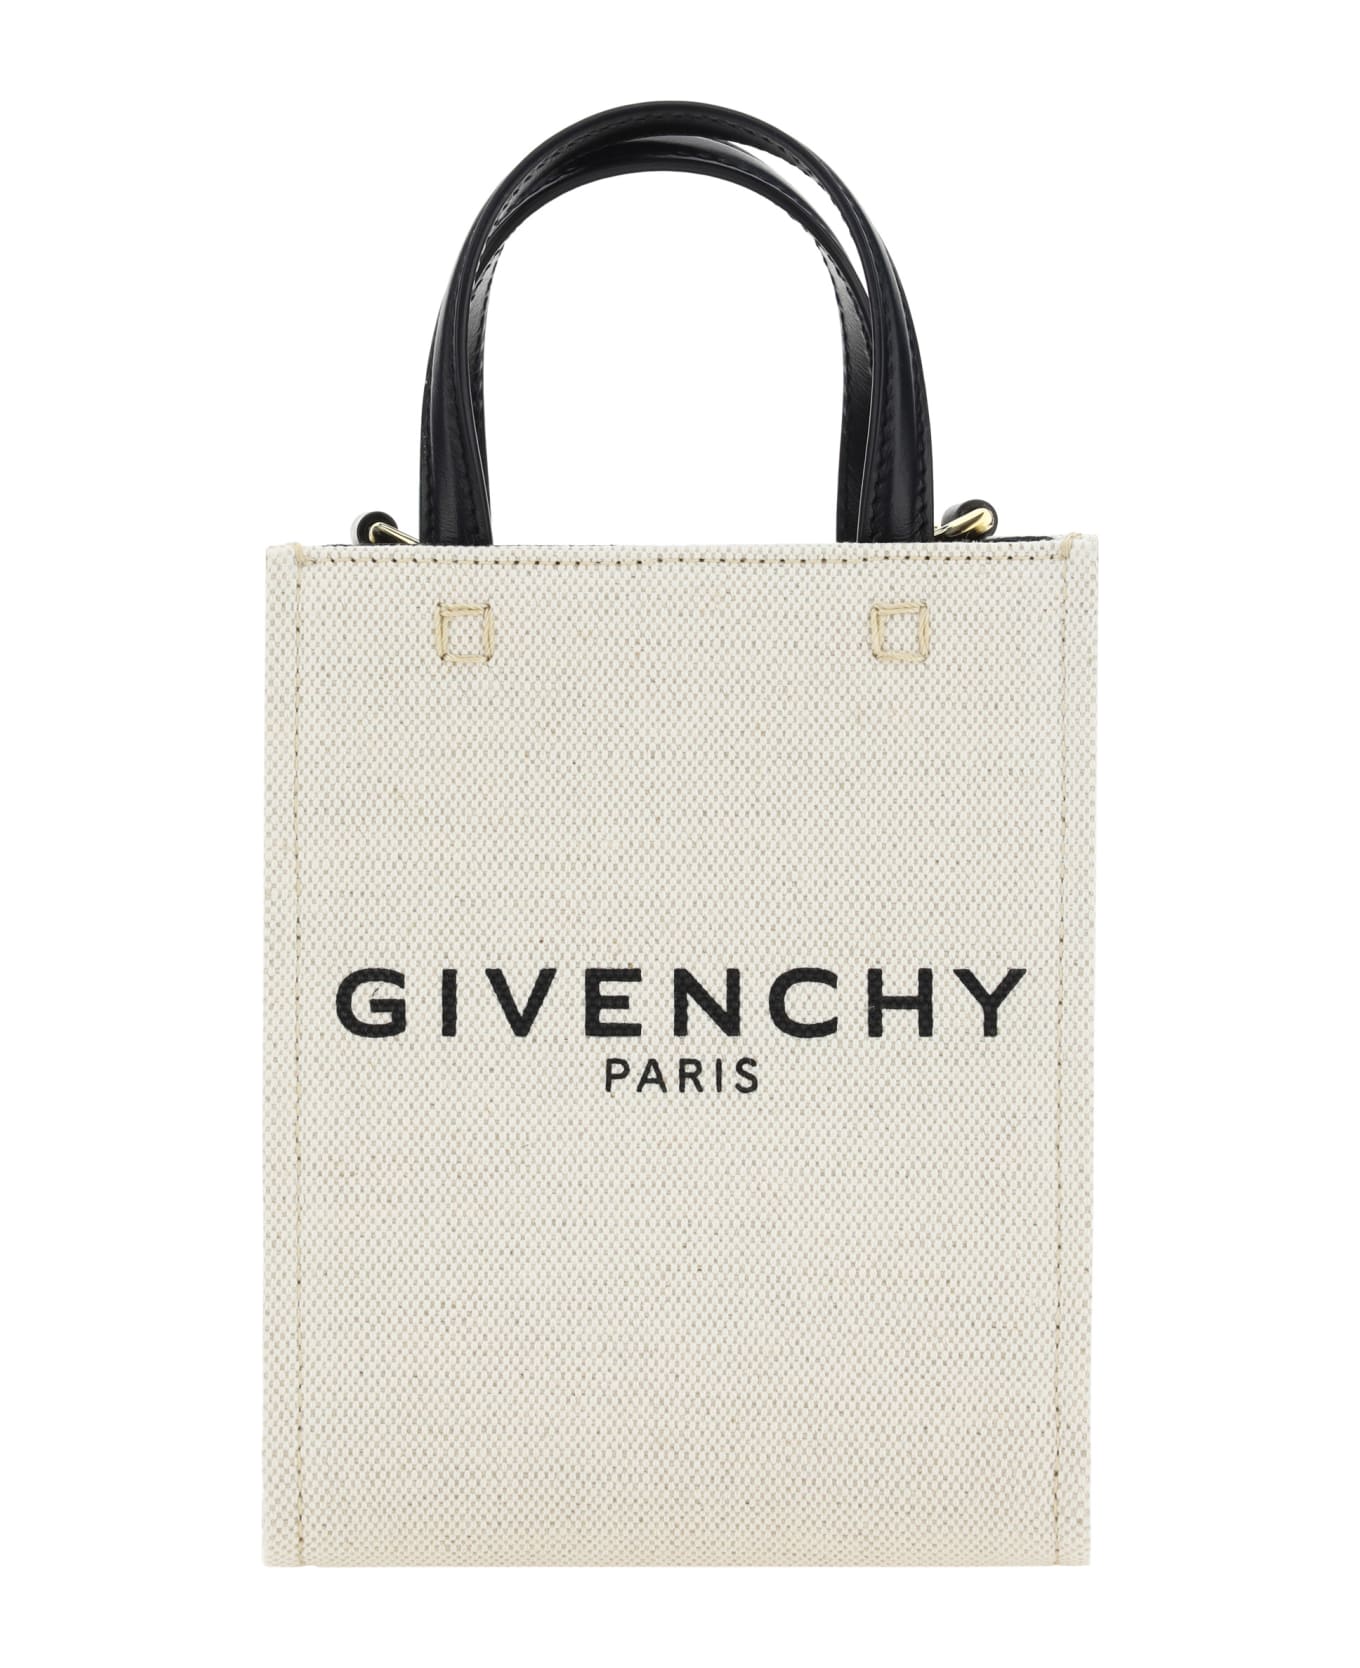 Givenchy G-tote Bag - Beige/black